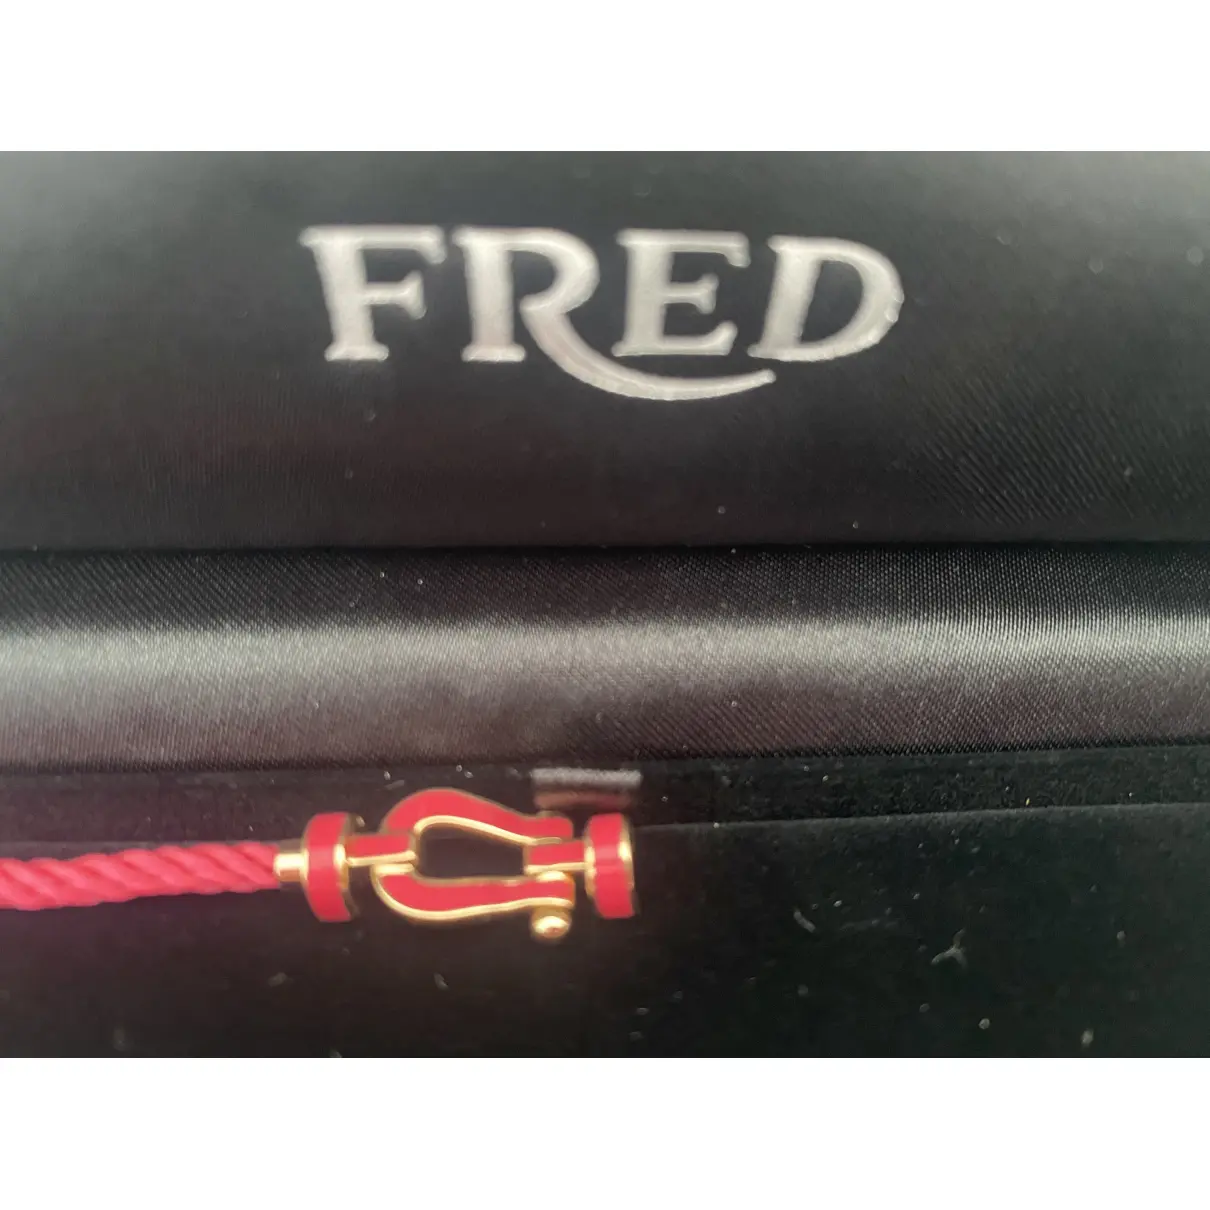 Buy Fred Force 10 pink gold bracelet online